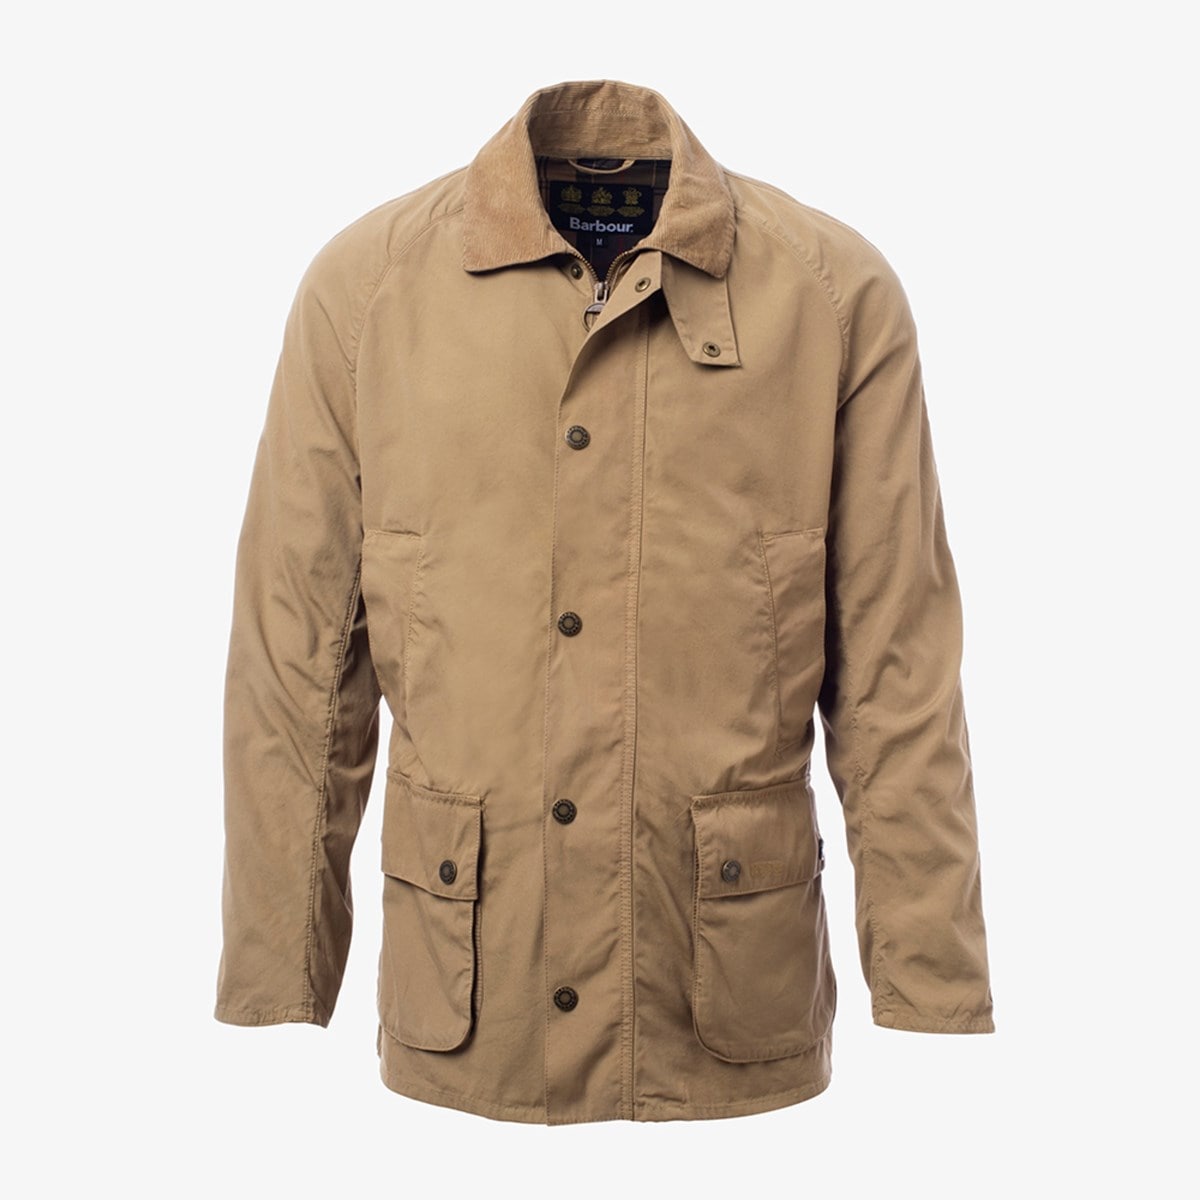 Barbour Ashby Casual Jacket | Men's Outerwear | Allen Edmonds